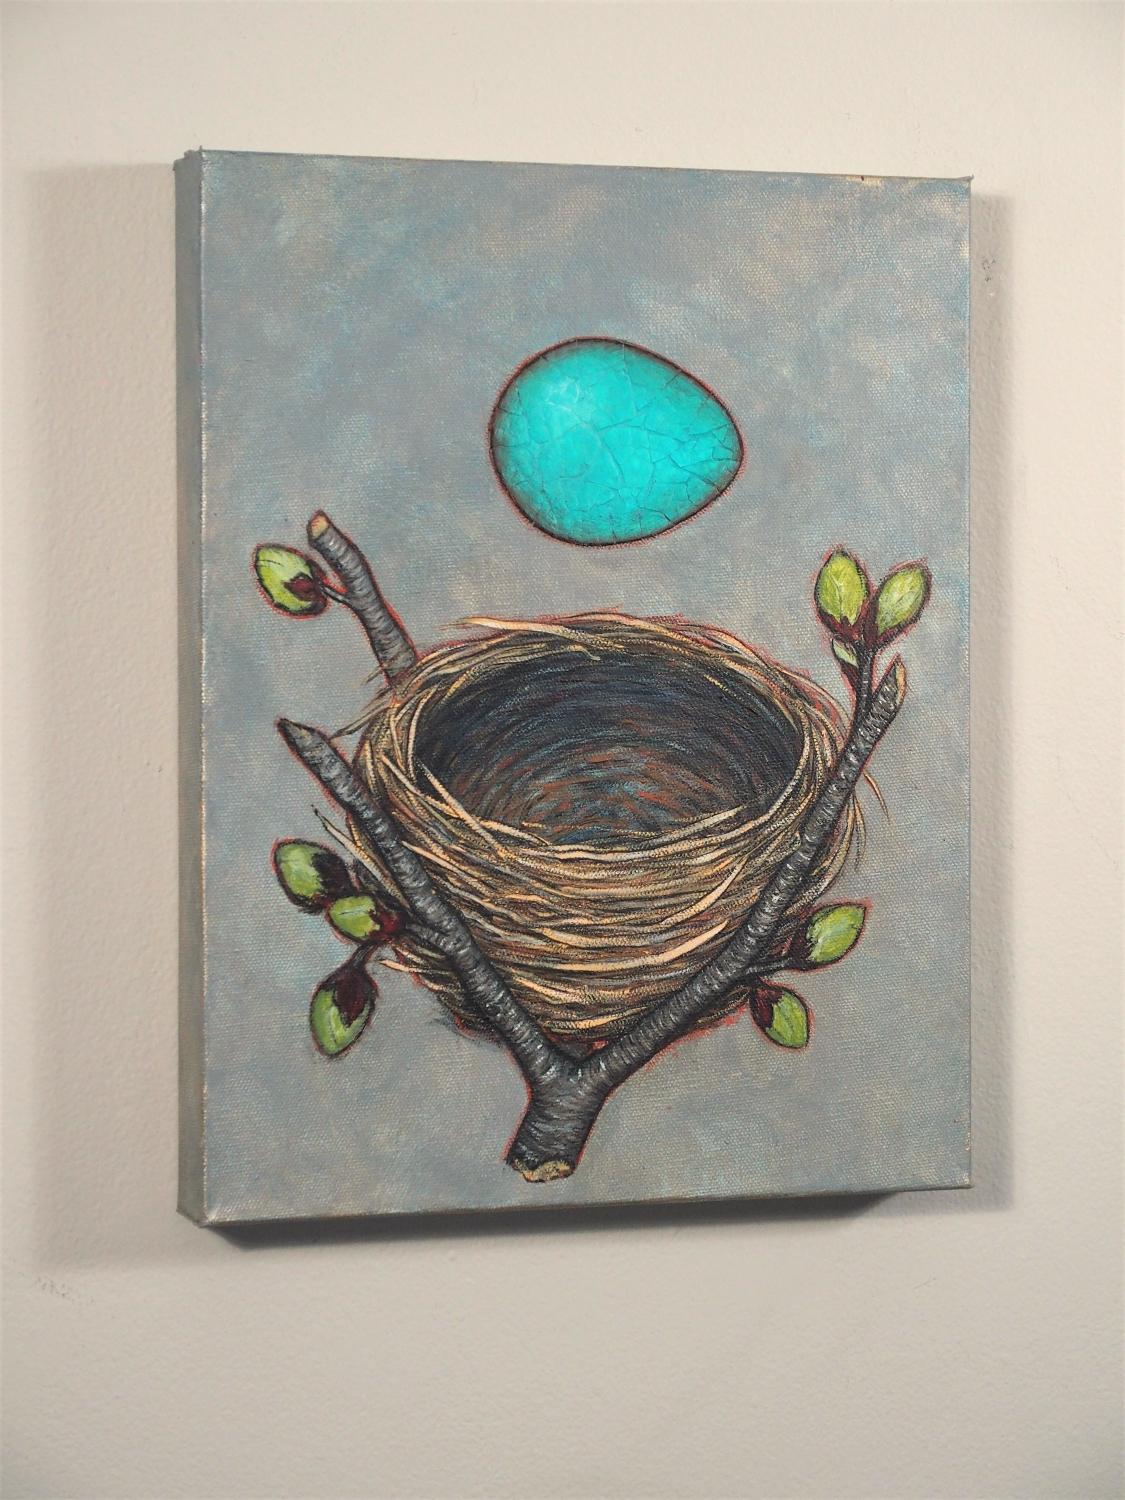 <p>Kommentare der Künstlerin<br>Die Künstlerin Jennifer Ross zeigt ein Ei in leuchtendem Türkis. Sie komponiert das frühlingshafte Werk mit ihrer charakteristischen Eierschalen-Collage. 